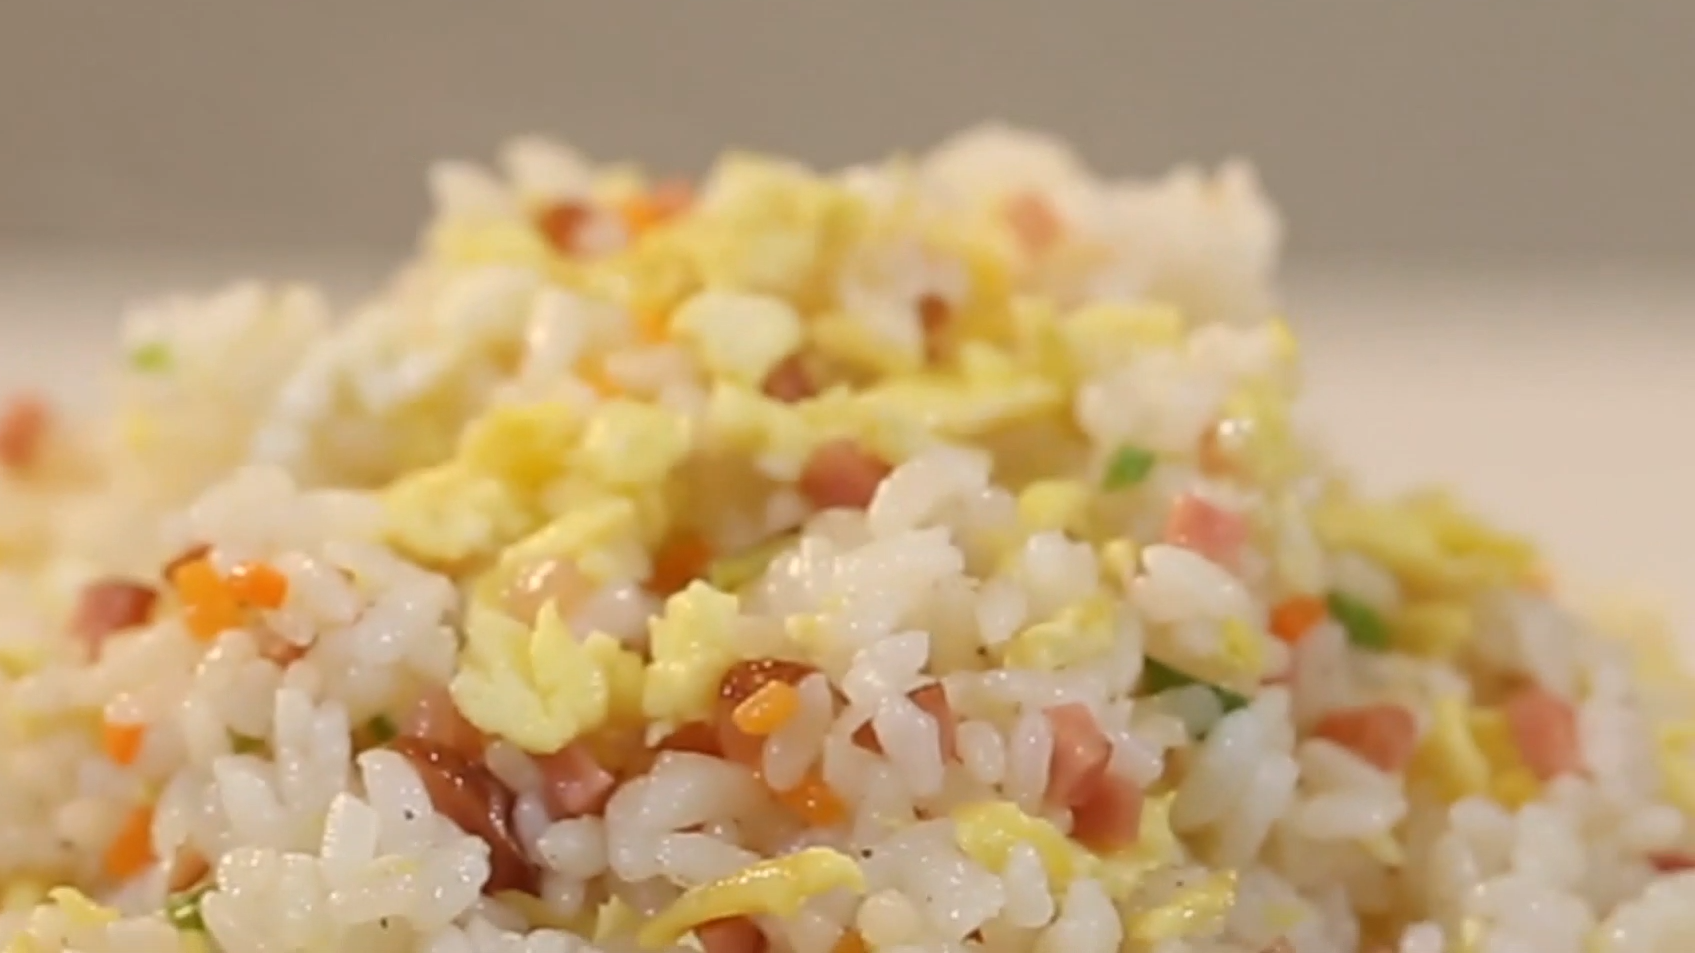 1经典蛋炒饭的做法  02:36  来源:好看视频-剩米饭,不要丢,大厨教你一